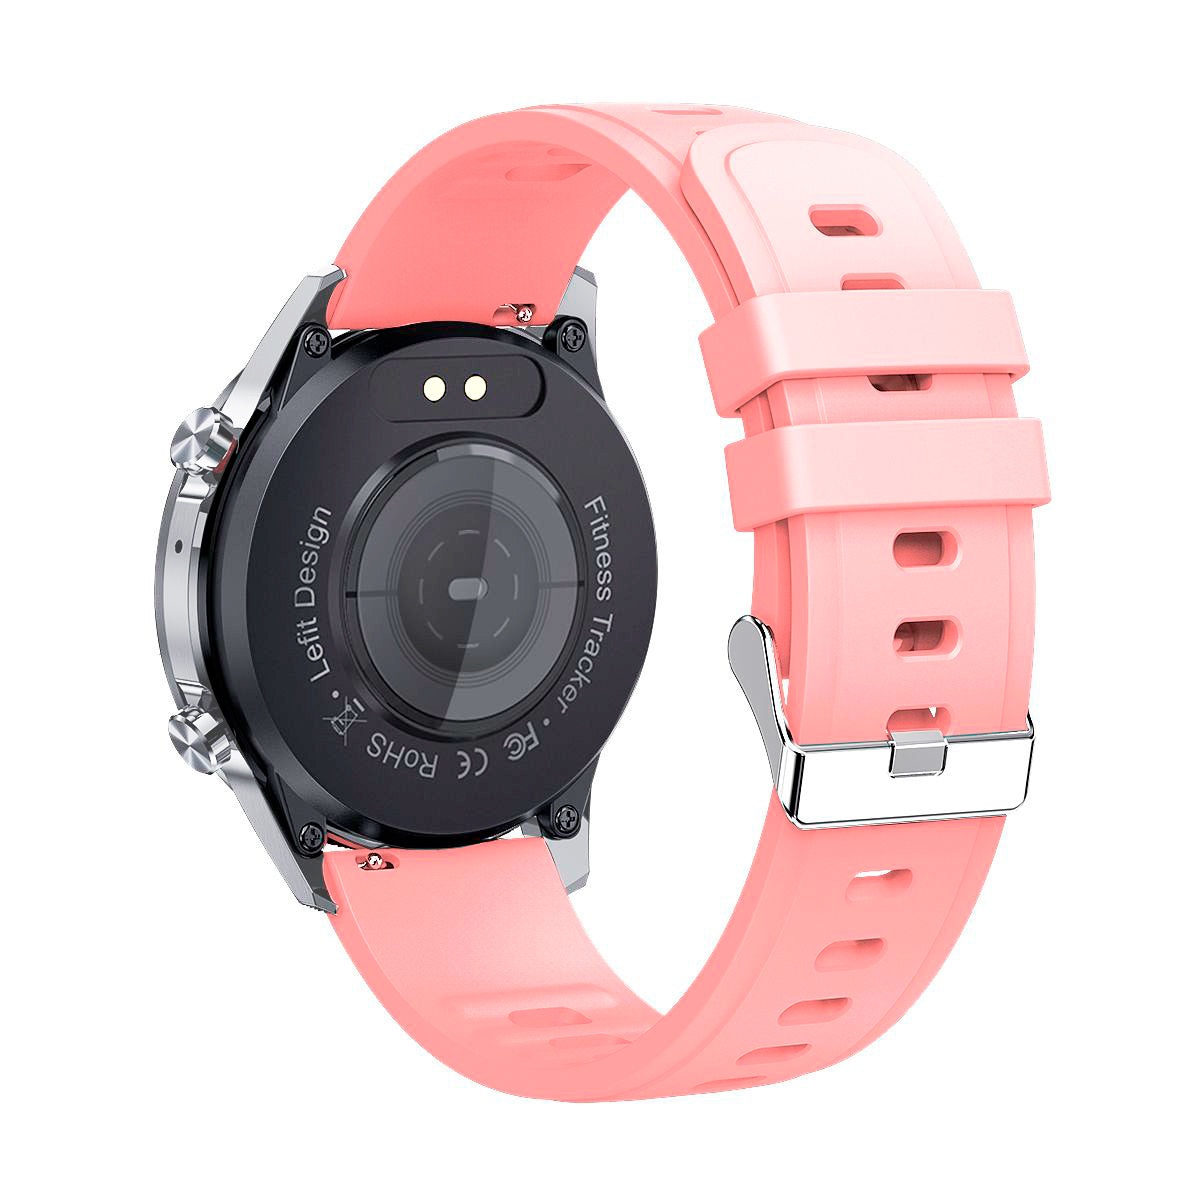 Smartwatch 24 bluetooh Color Rosa